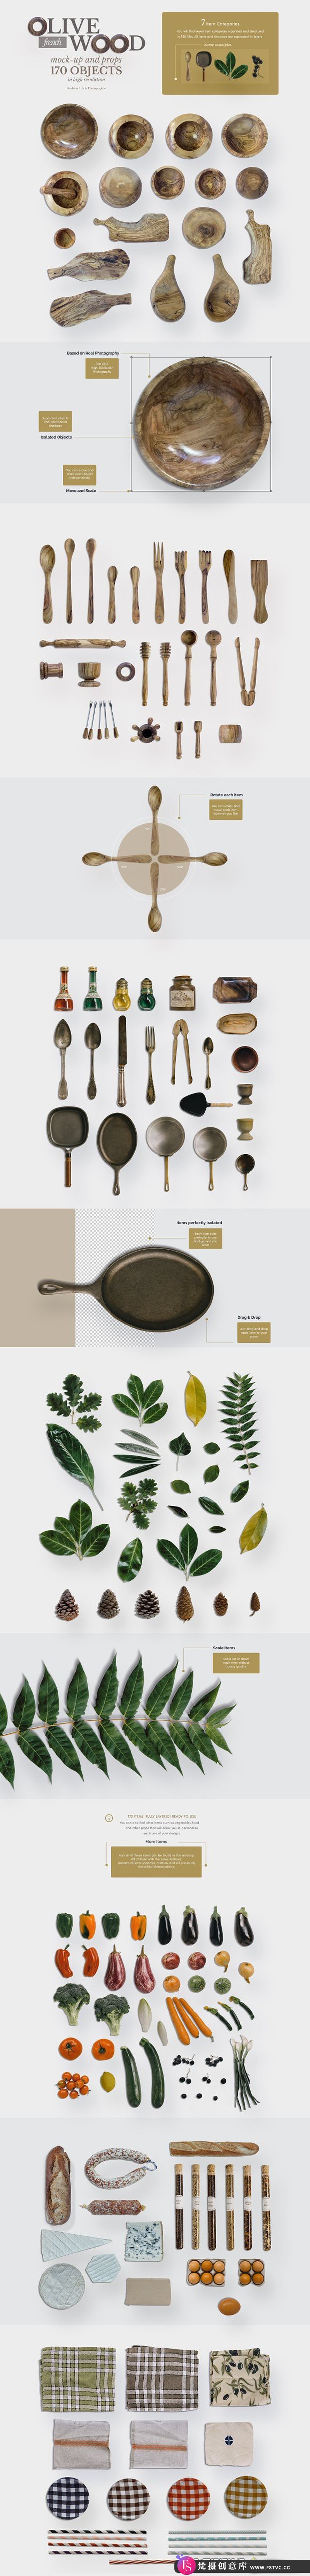 [PS样机模型]厨房和餐桌杂物PS样机模型基于法国橄榄木厨房物品的模型-梵摄创意库